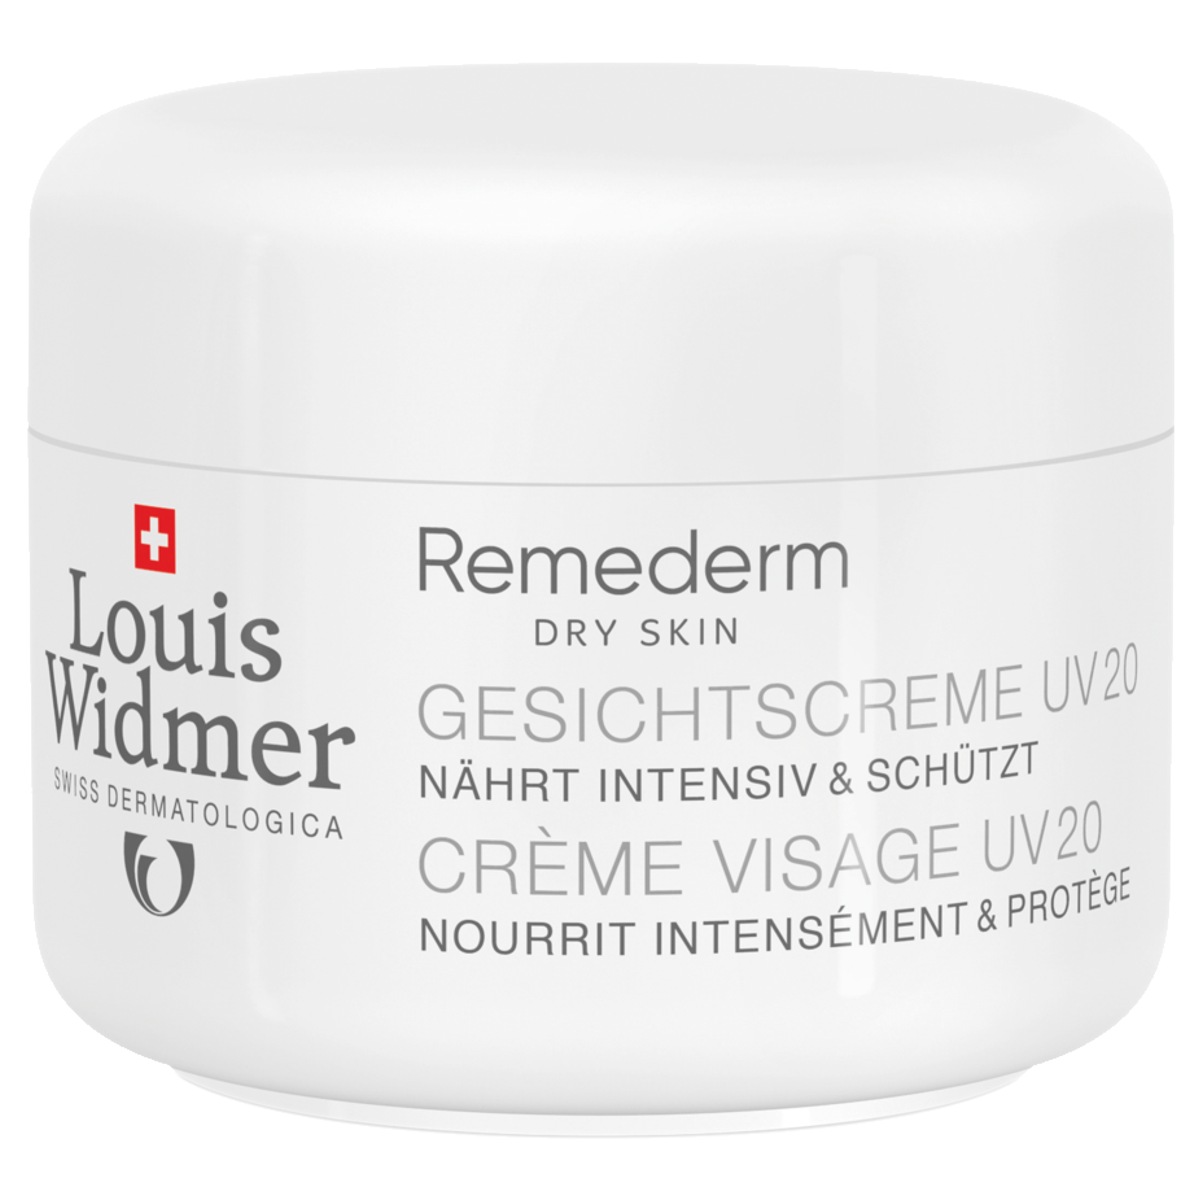 Louis Widmer Remederm Gesichtscreme UV 20 50 ml